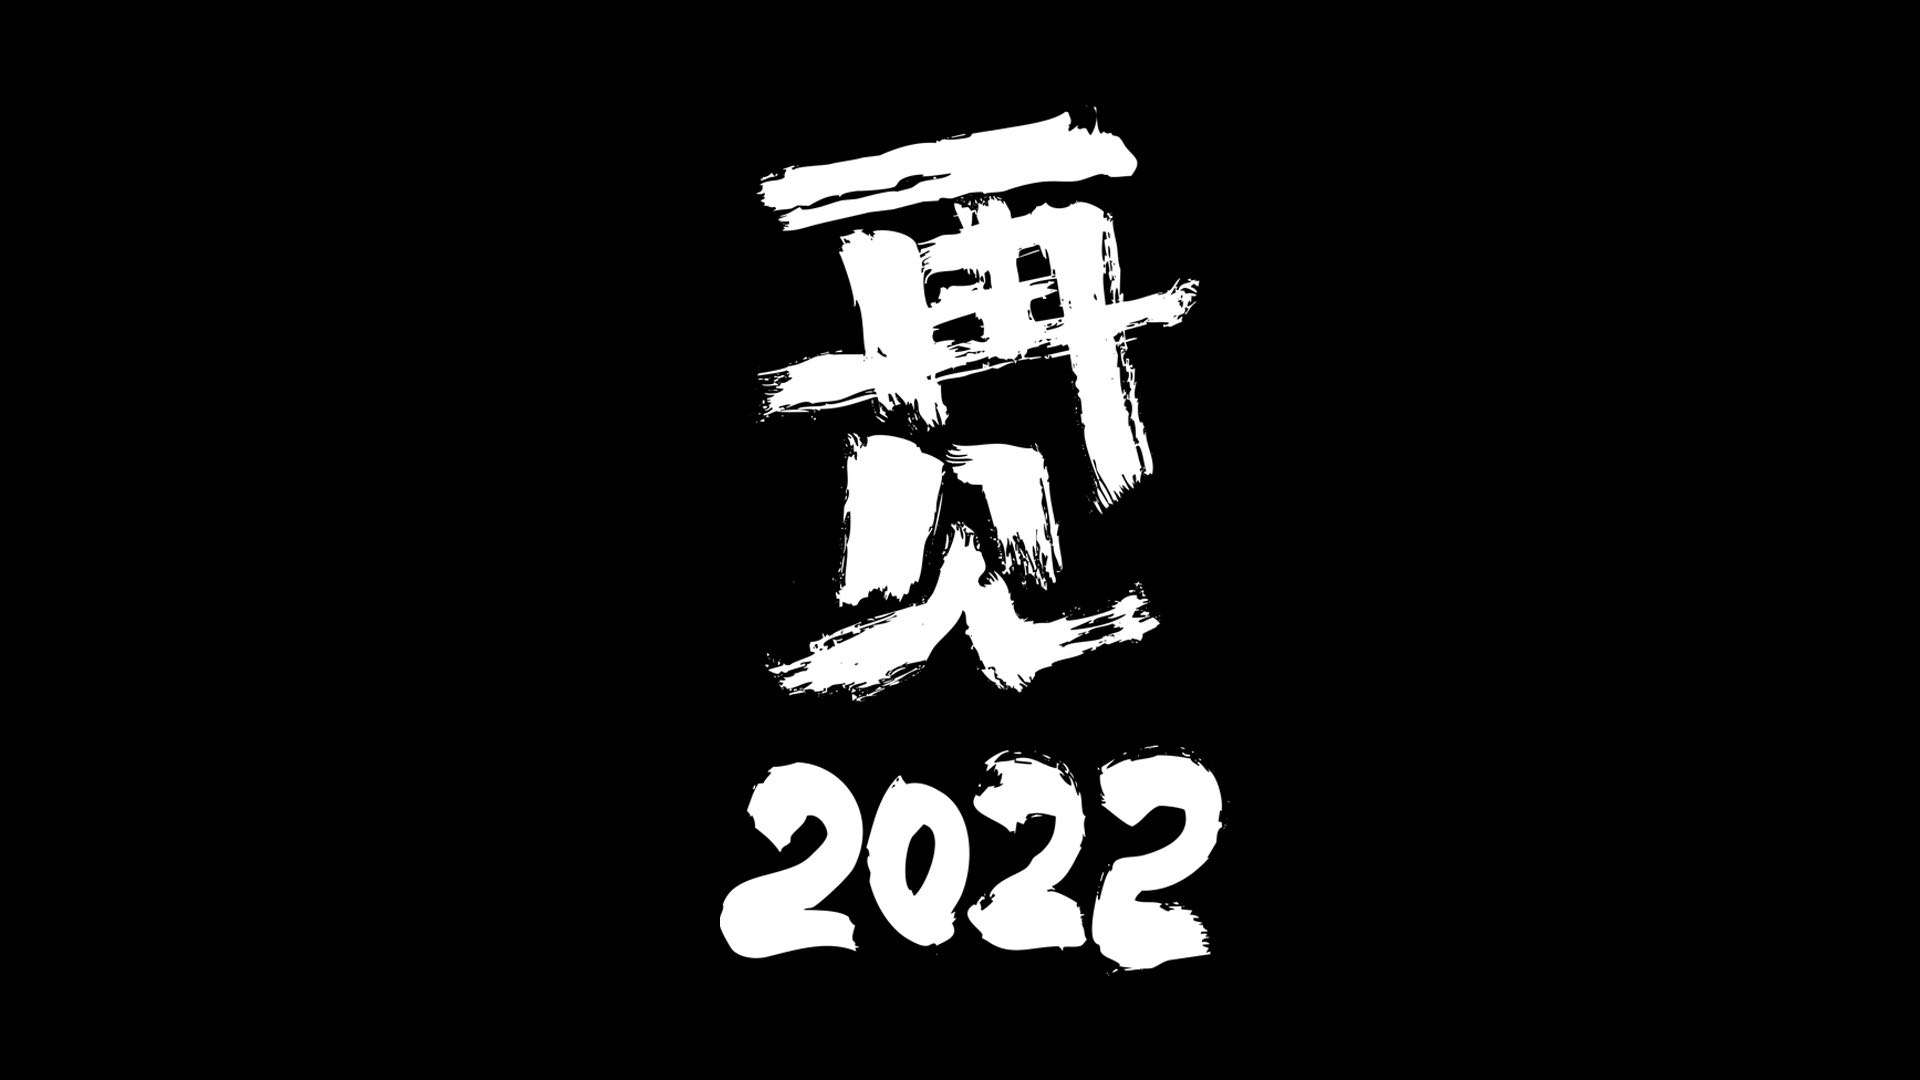 再见2022 ......